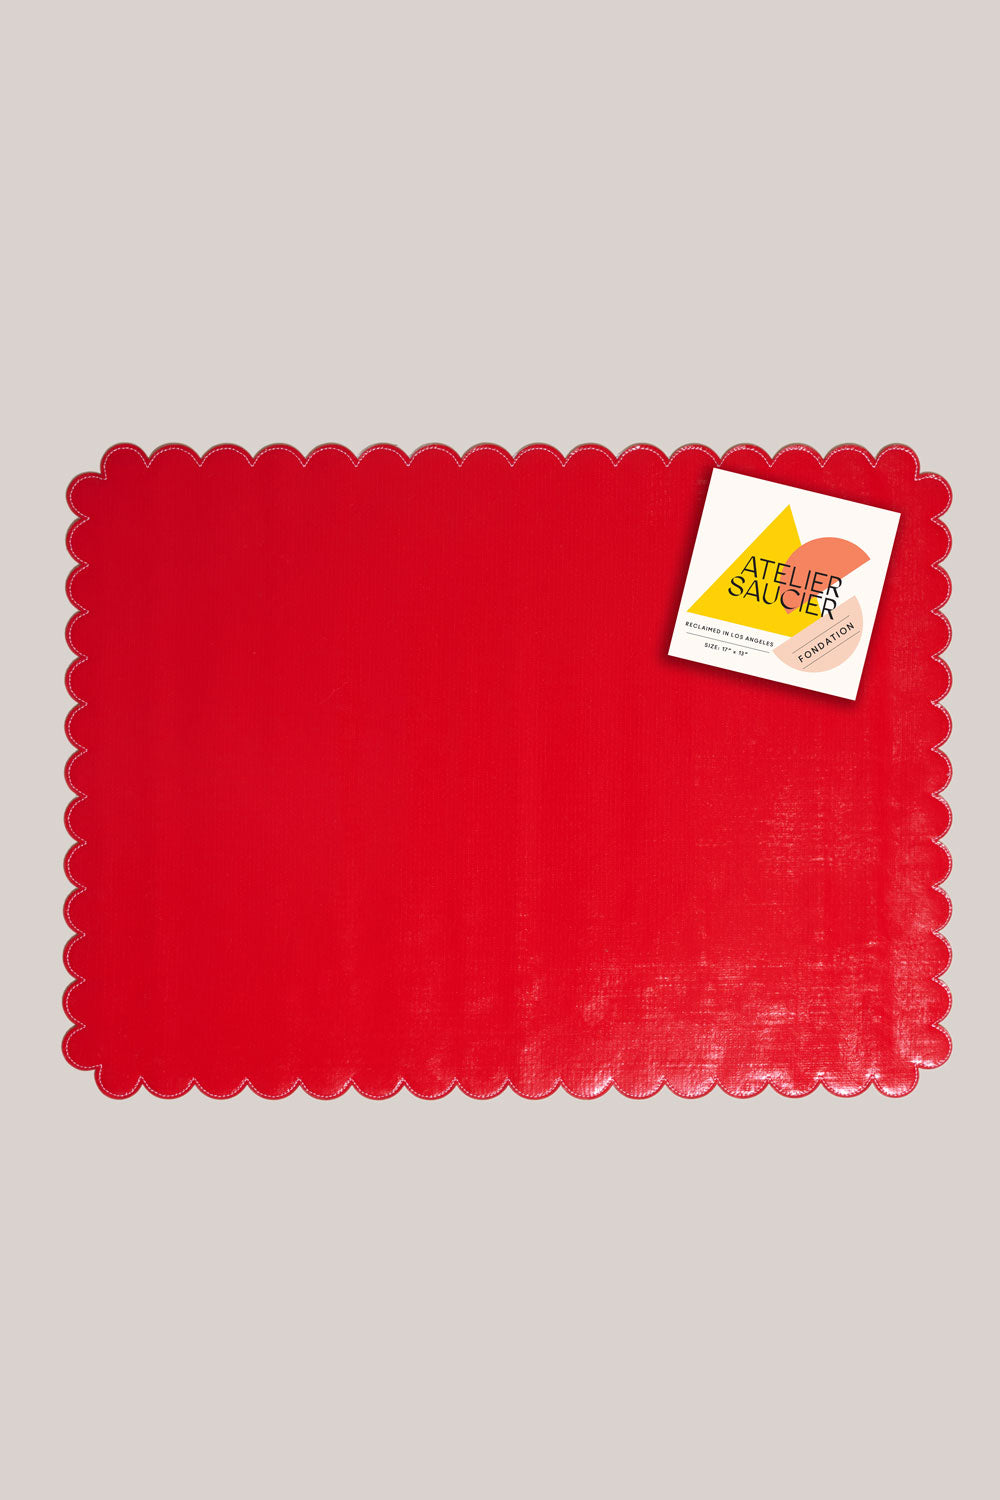 Red Hot Oilcloth Placemat PLACEMATS ATELIER SAUCIER - Atelier Saucier